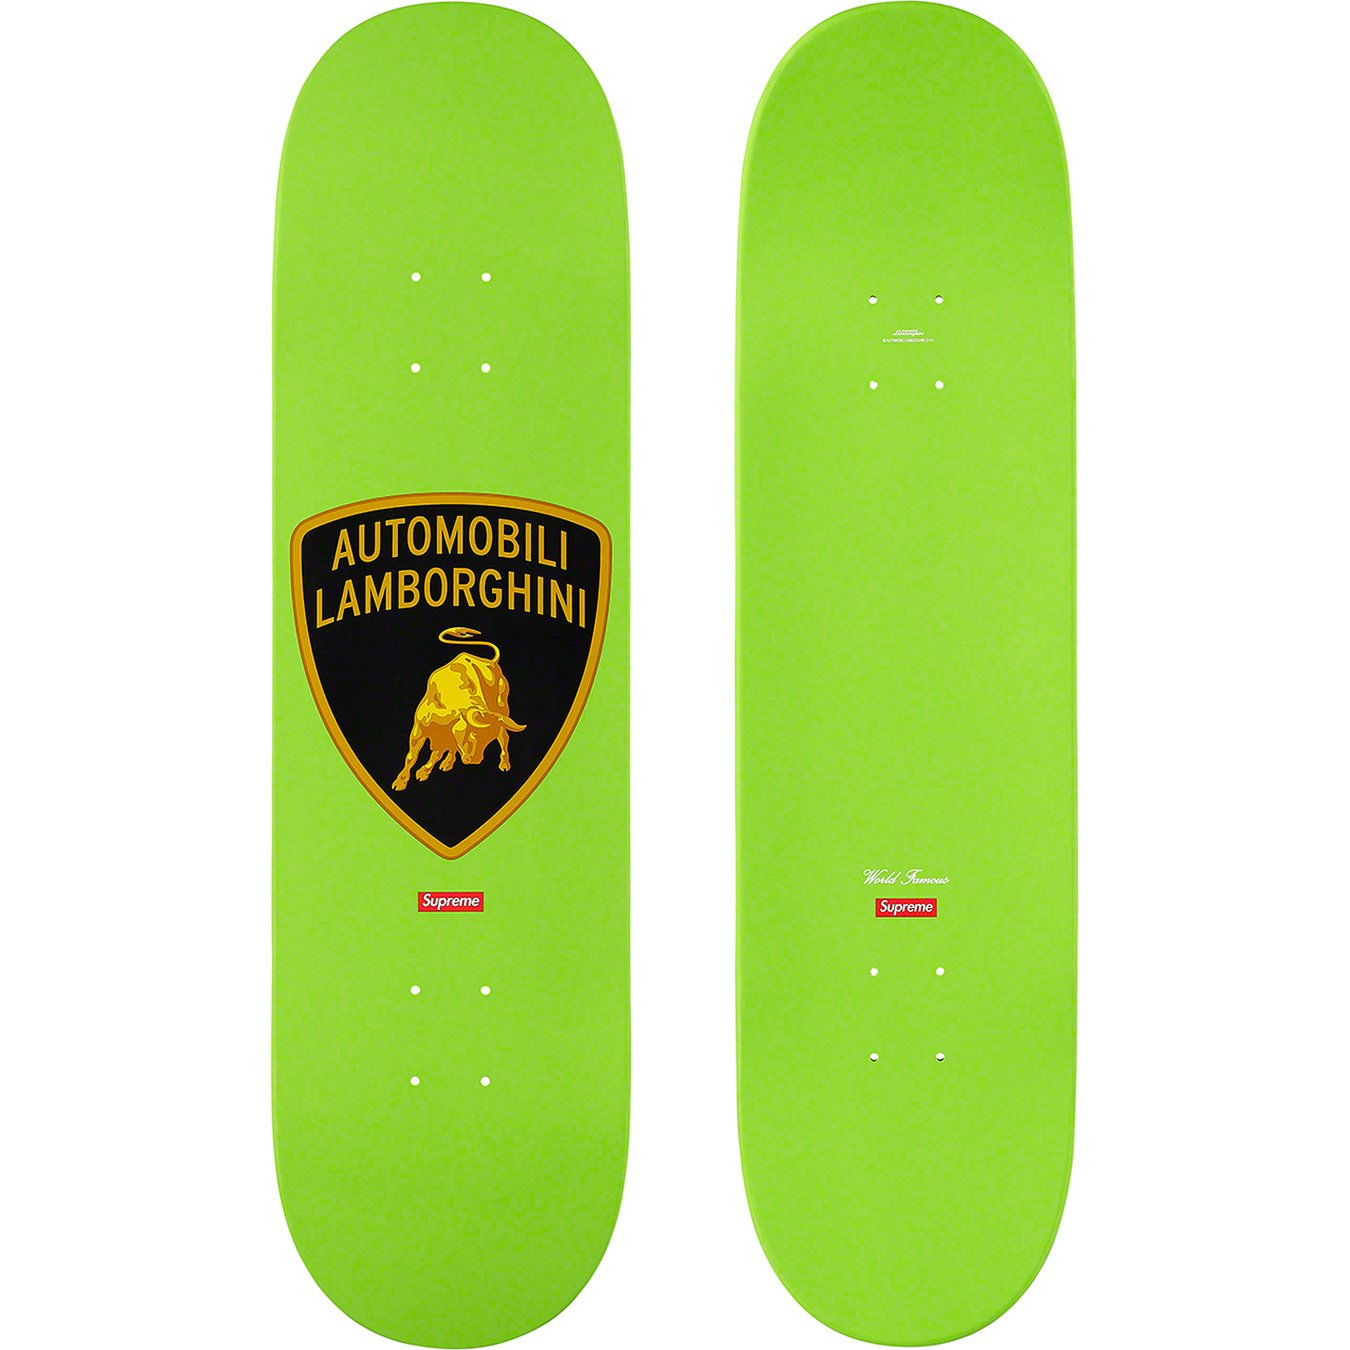 Supreme®/Automobili Lamborghini Skateboard - Supreme Community